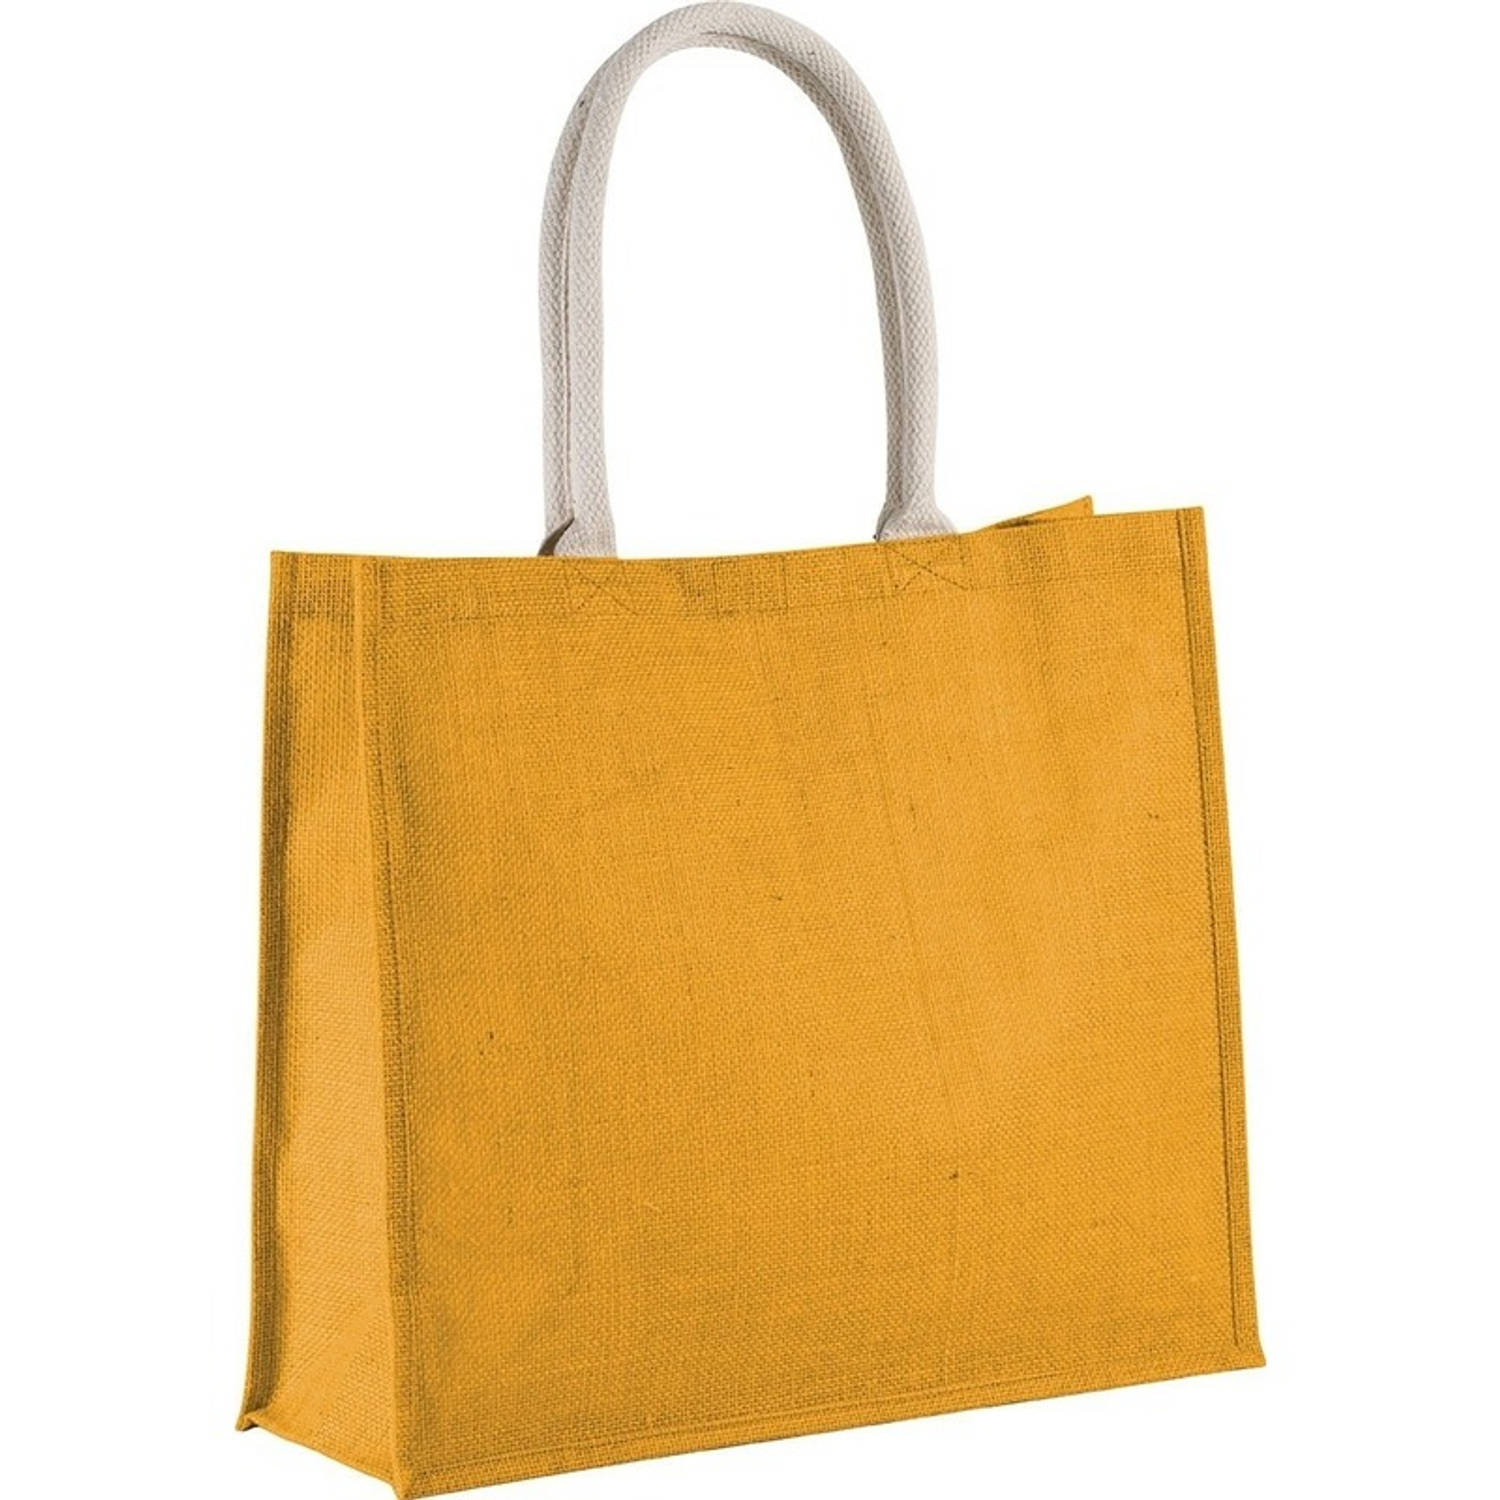 Gele jute shopper/boodschappentas 42 cm - Boodschappentassen